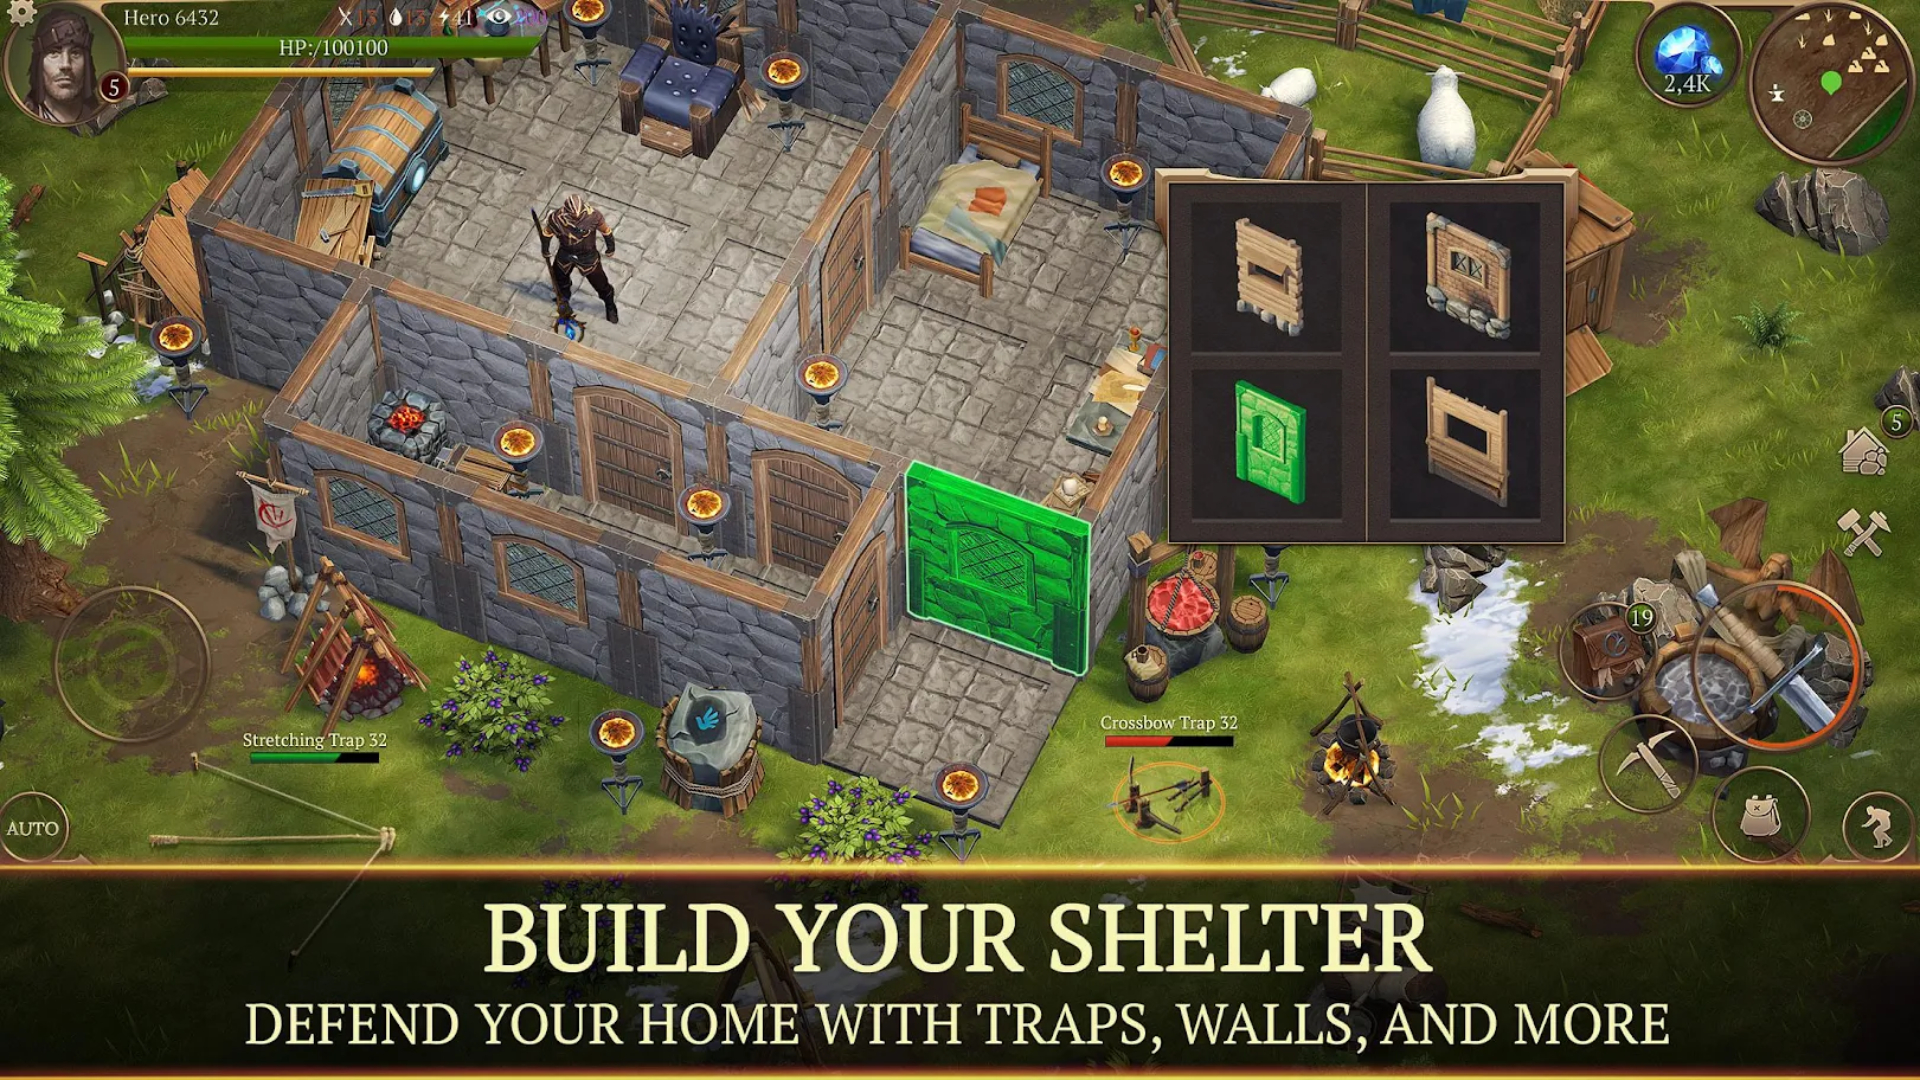 Survival Games stormfall: Bilde viser et hus som blir kontrakt. Tekst nederst på skjermen lyder